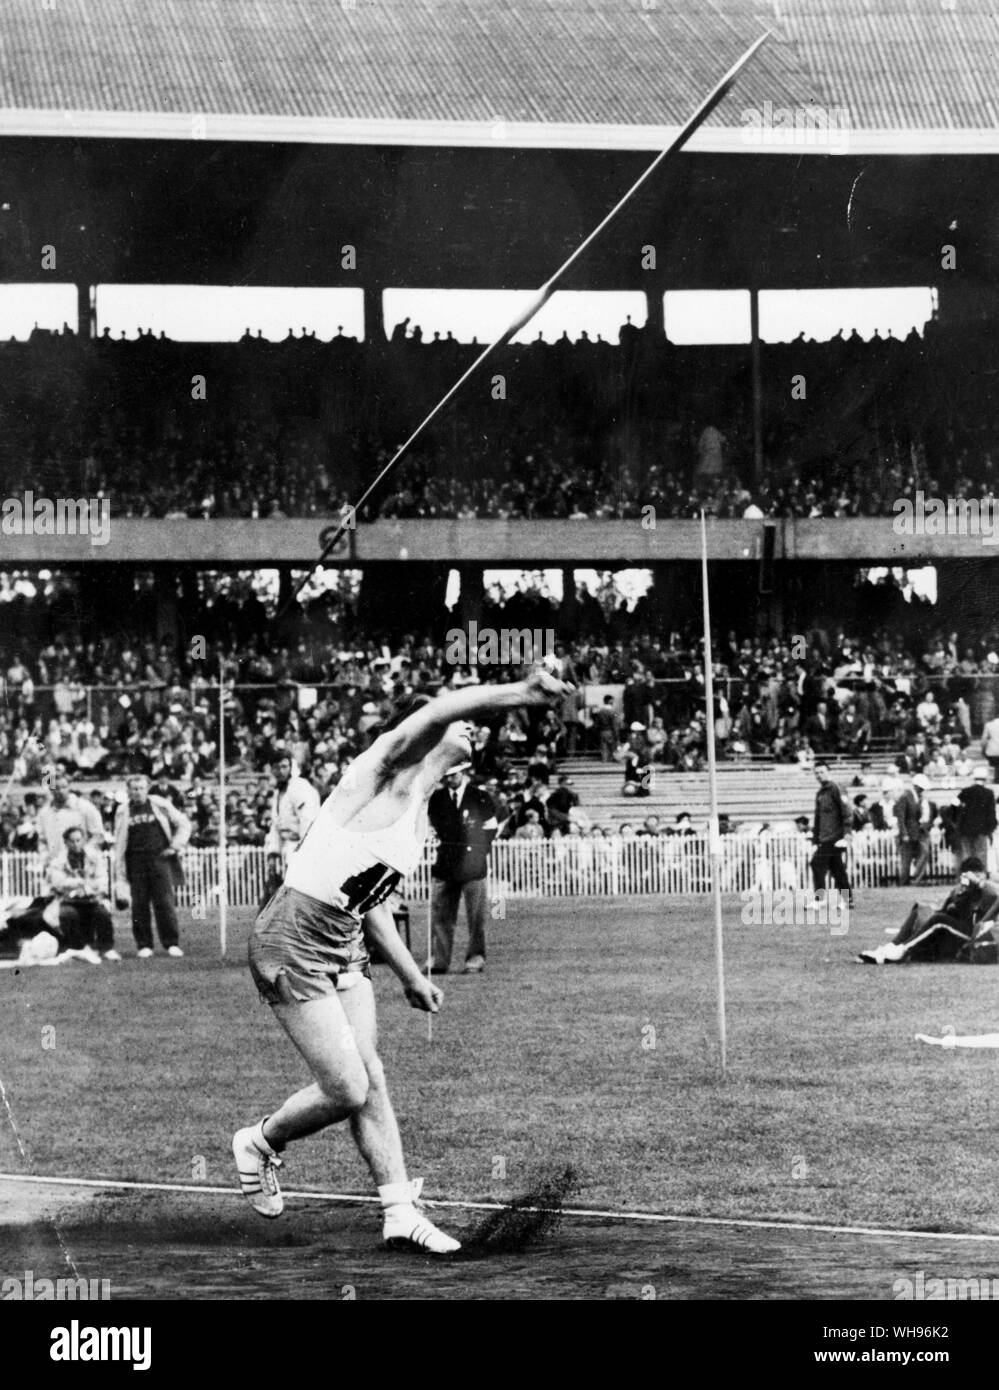 Aus., Melbourne, Olympics, 1956: Egil Danielsen (Norwegen) gewinnen werfen im Speer.. Stockfoto